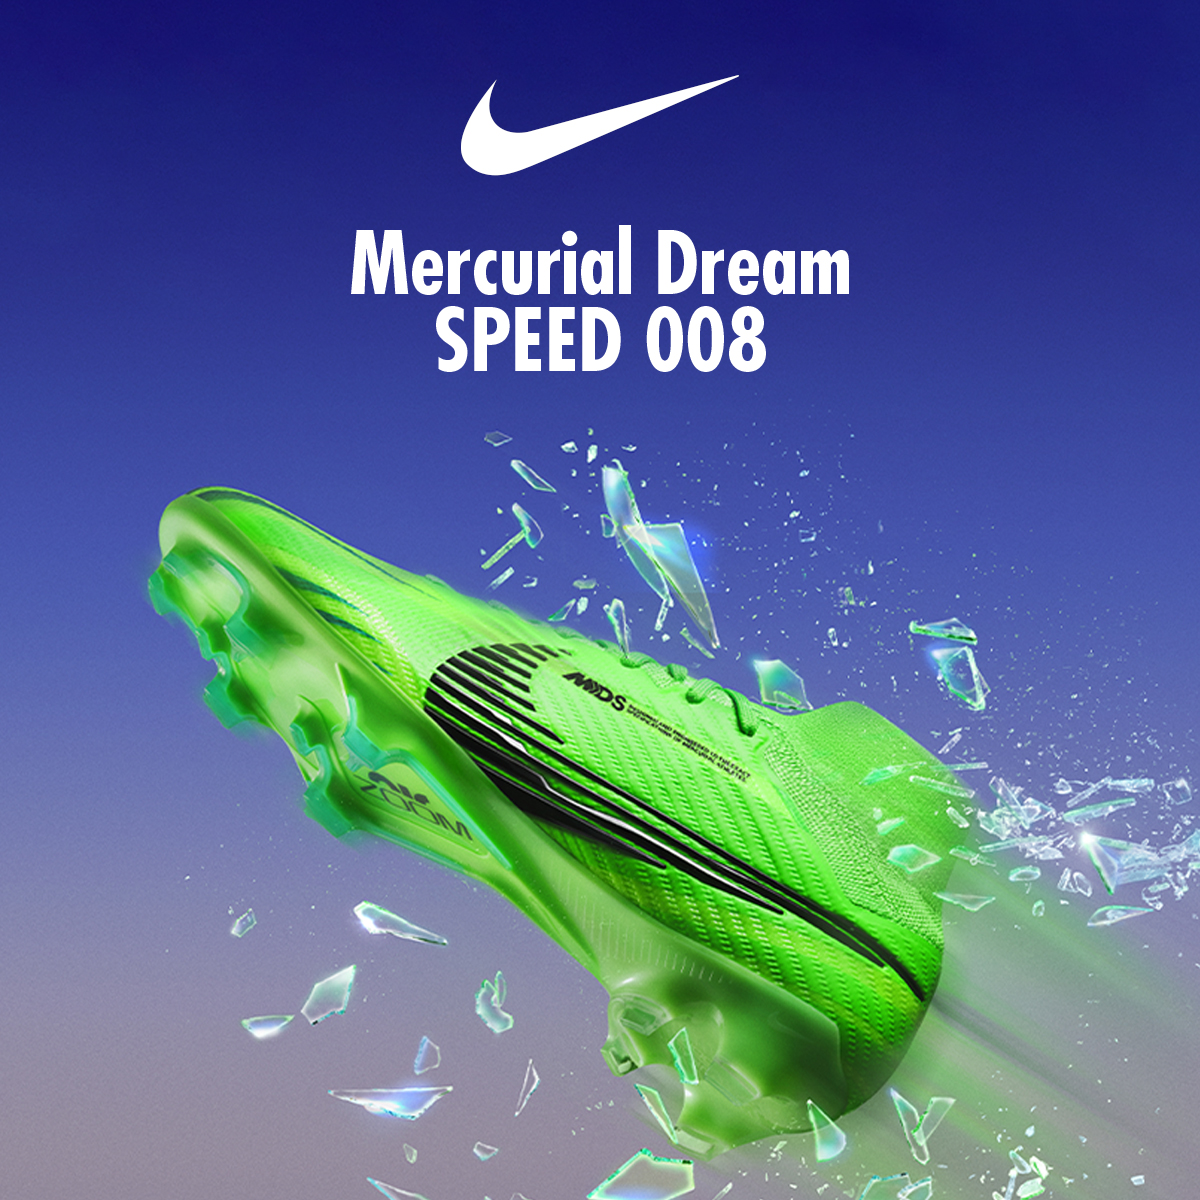 Mercurial Dream speed 008